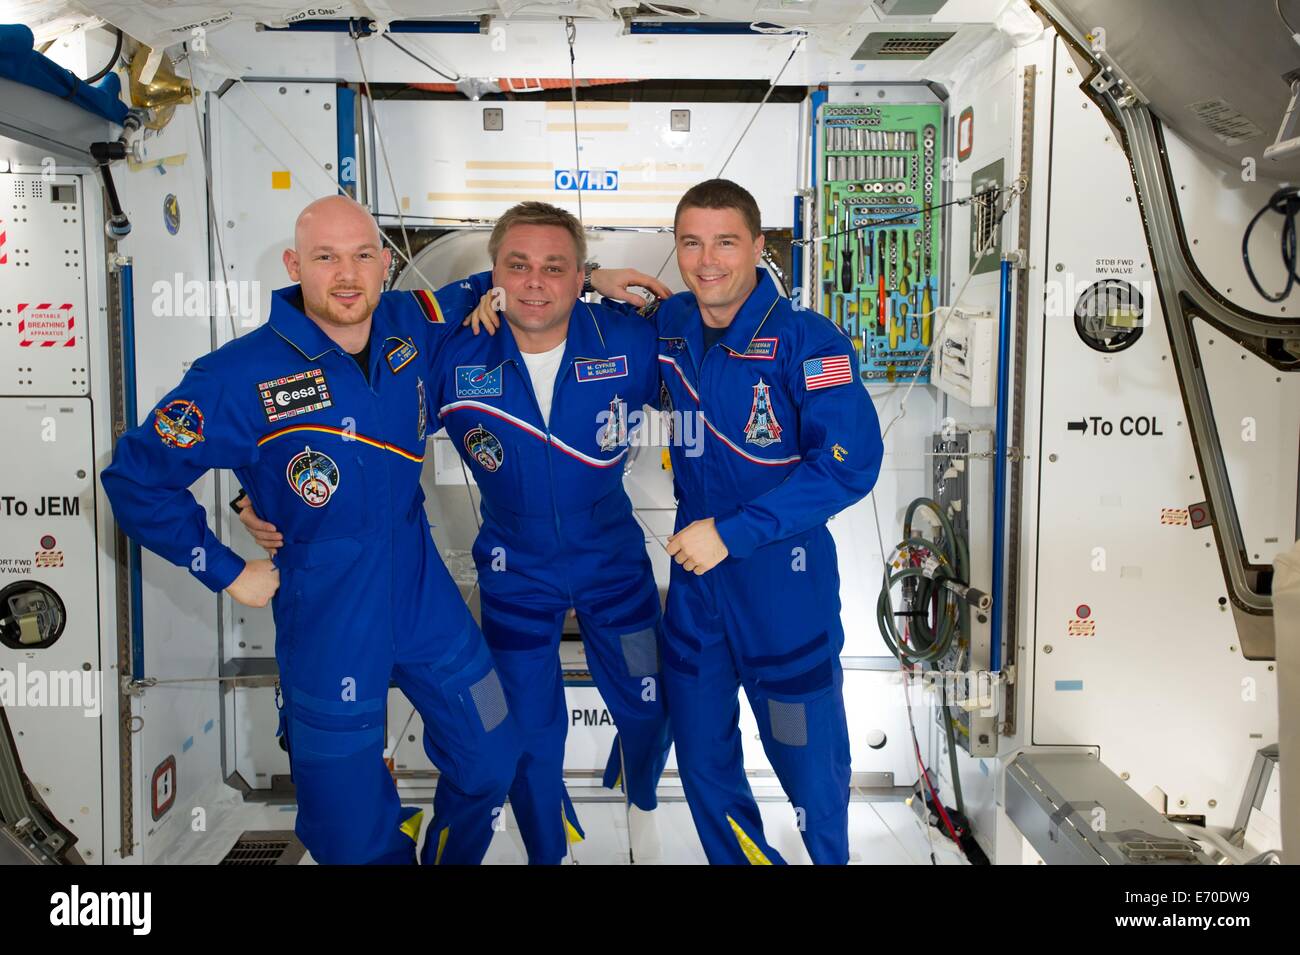 Agenzia spaziale europea astronauta Alexander Gerst (sinistra), cosmonauta russo Maxim Suraev (centro) e l'astronauta della NASA Reid Wiseman, tutti Expedition 40 ingegneri di volo, posare per un ritratto in armonia il nodo della Stazione Spaziale Internazionale Agosto 23, 2014 in orbita intorno alla terra. Foto Stock